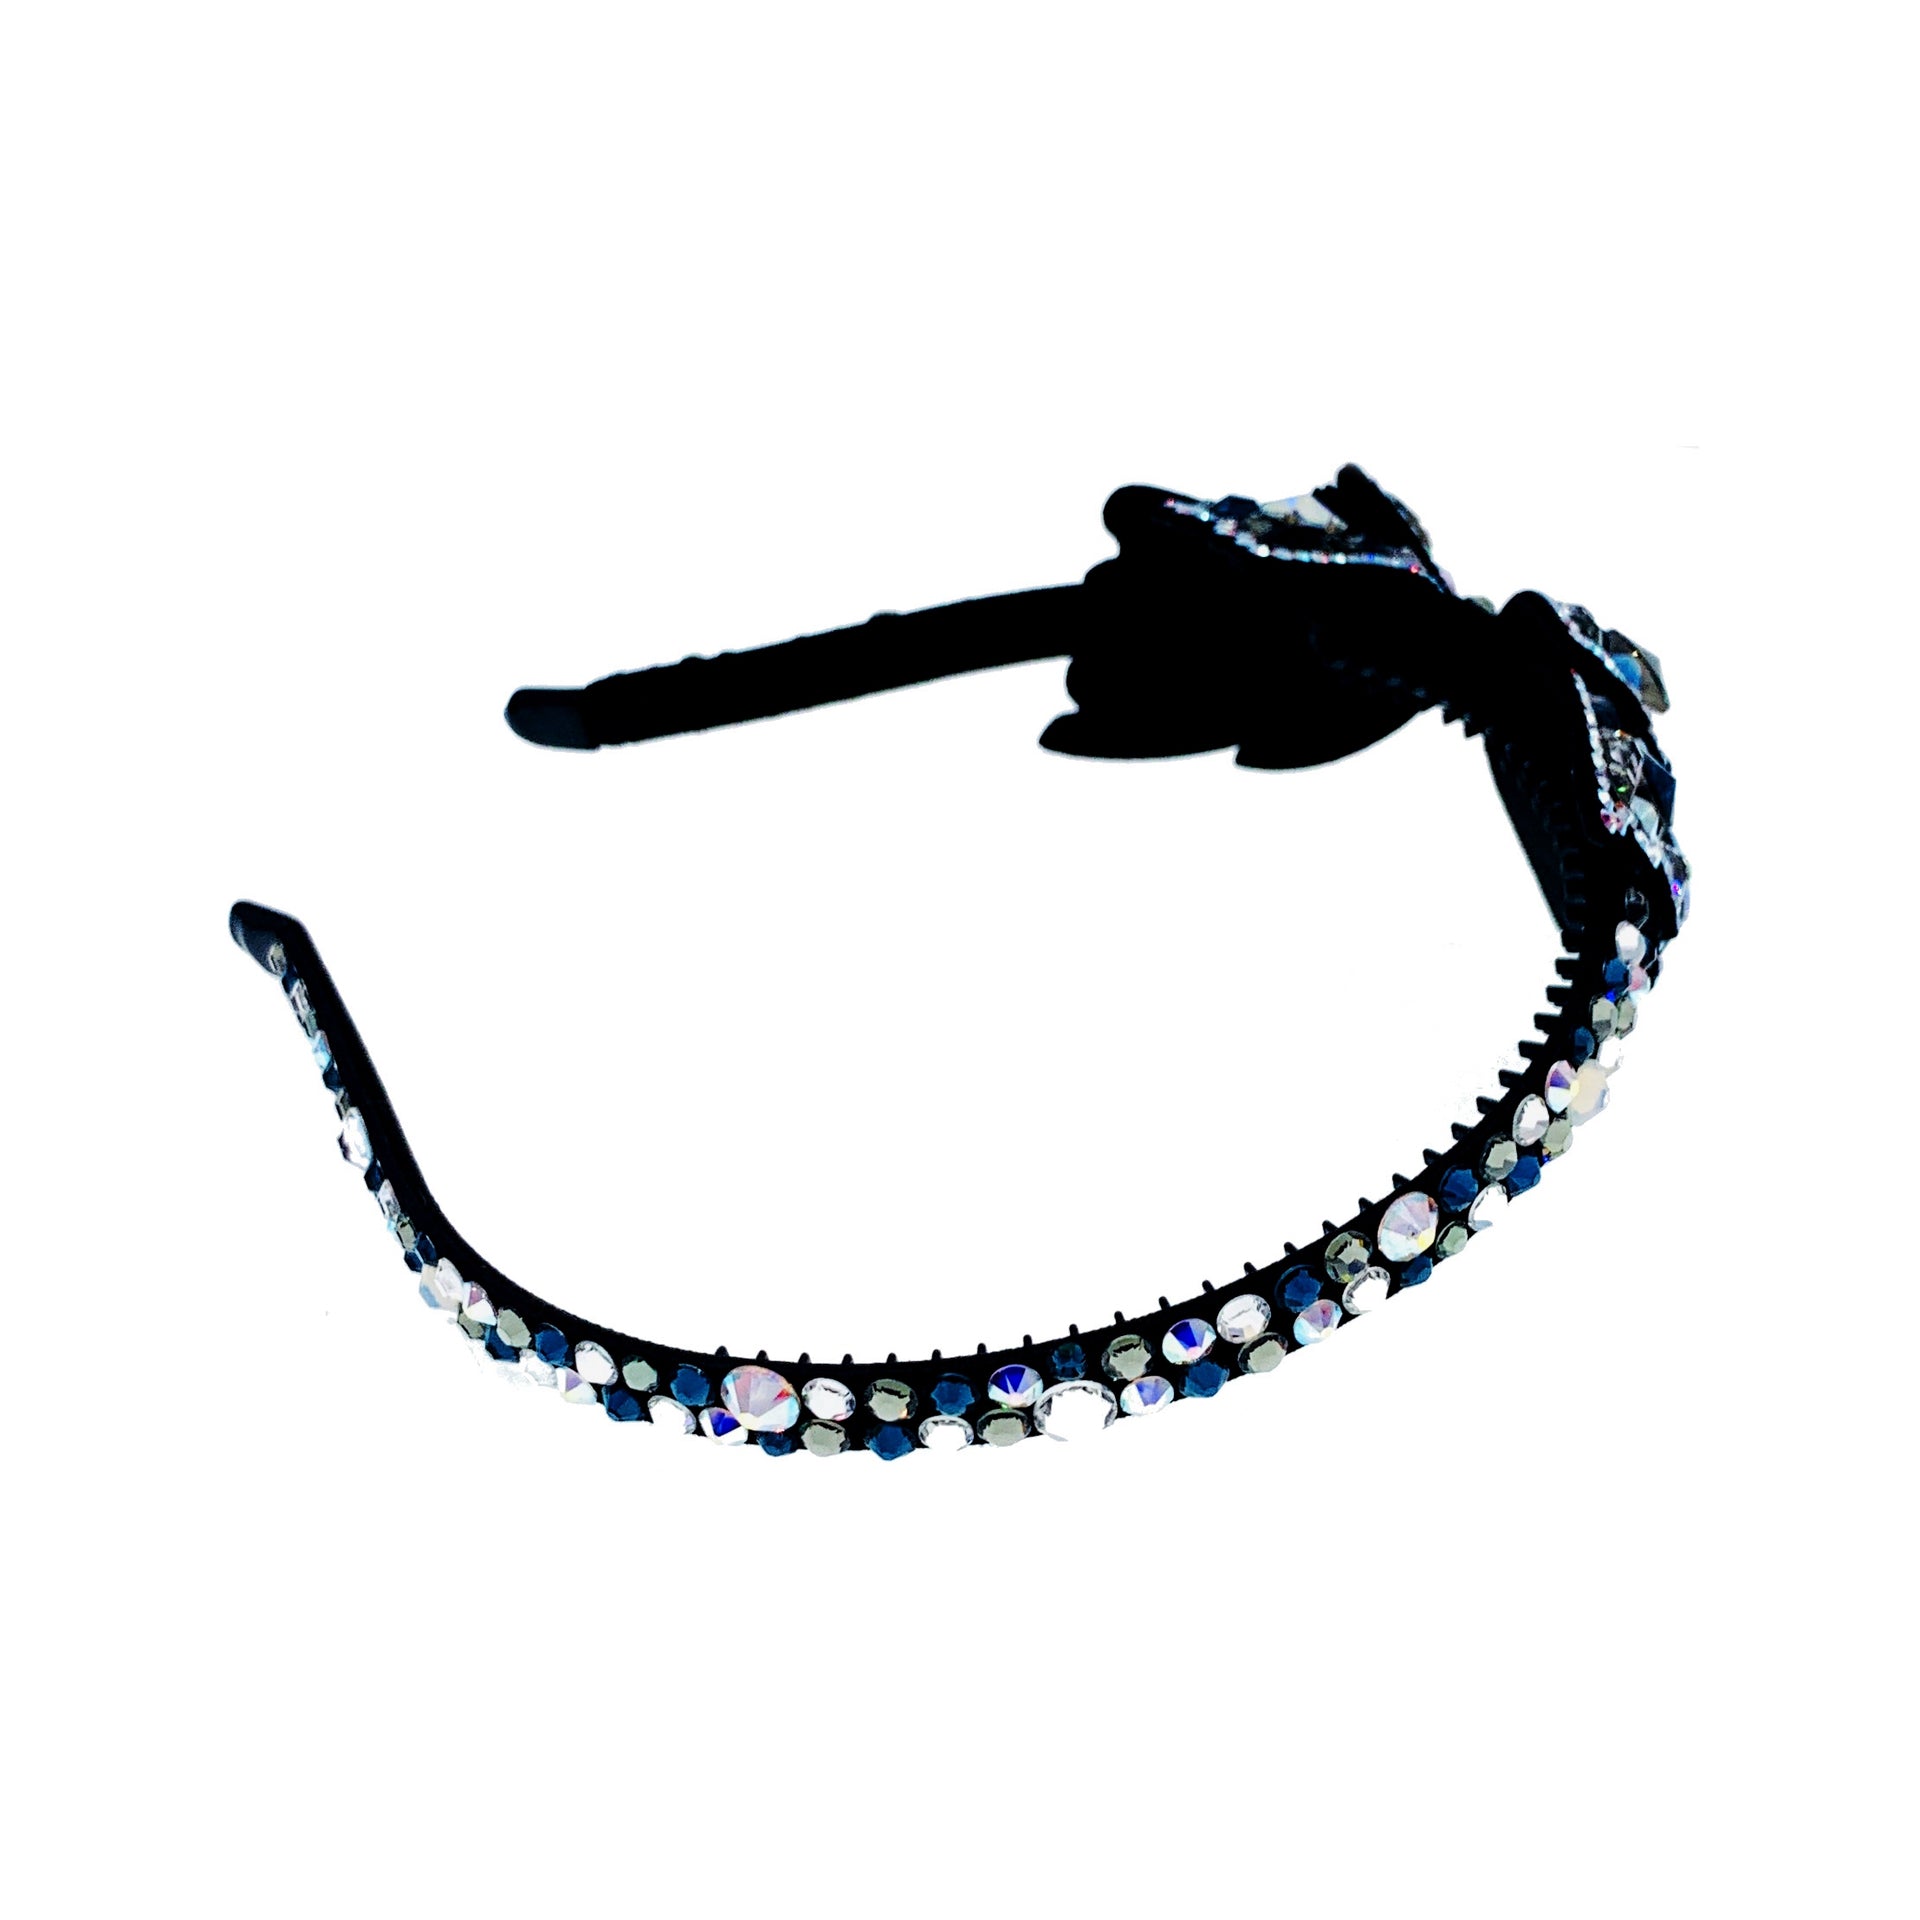 Silvano Dreamy Bow Headband Handmade use Swarovski Crystals Hairband, Headband - MOGHANT